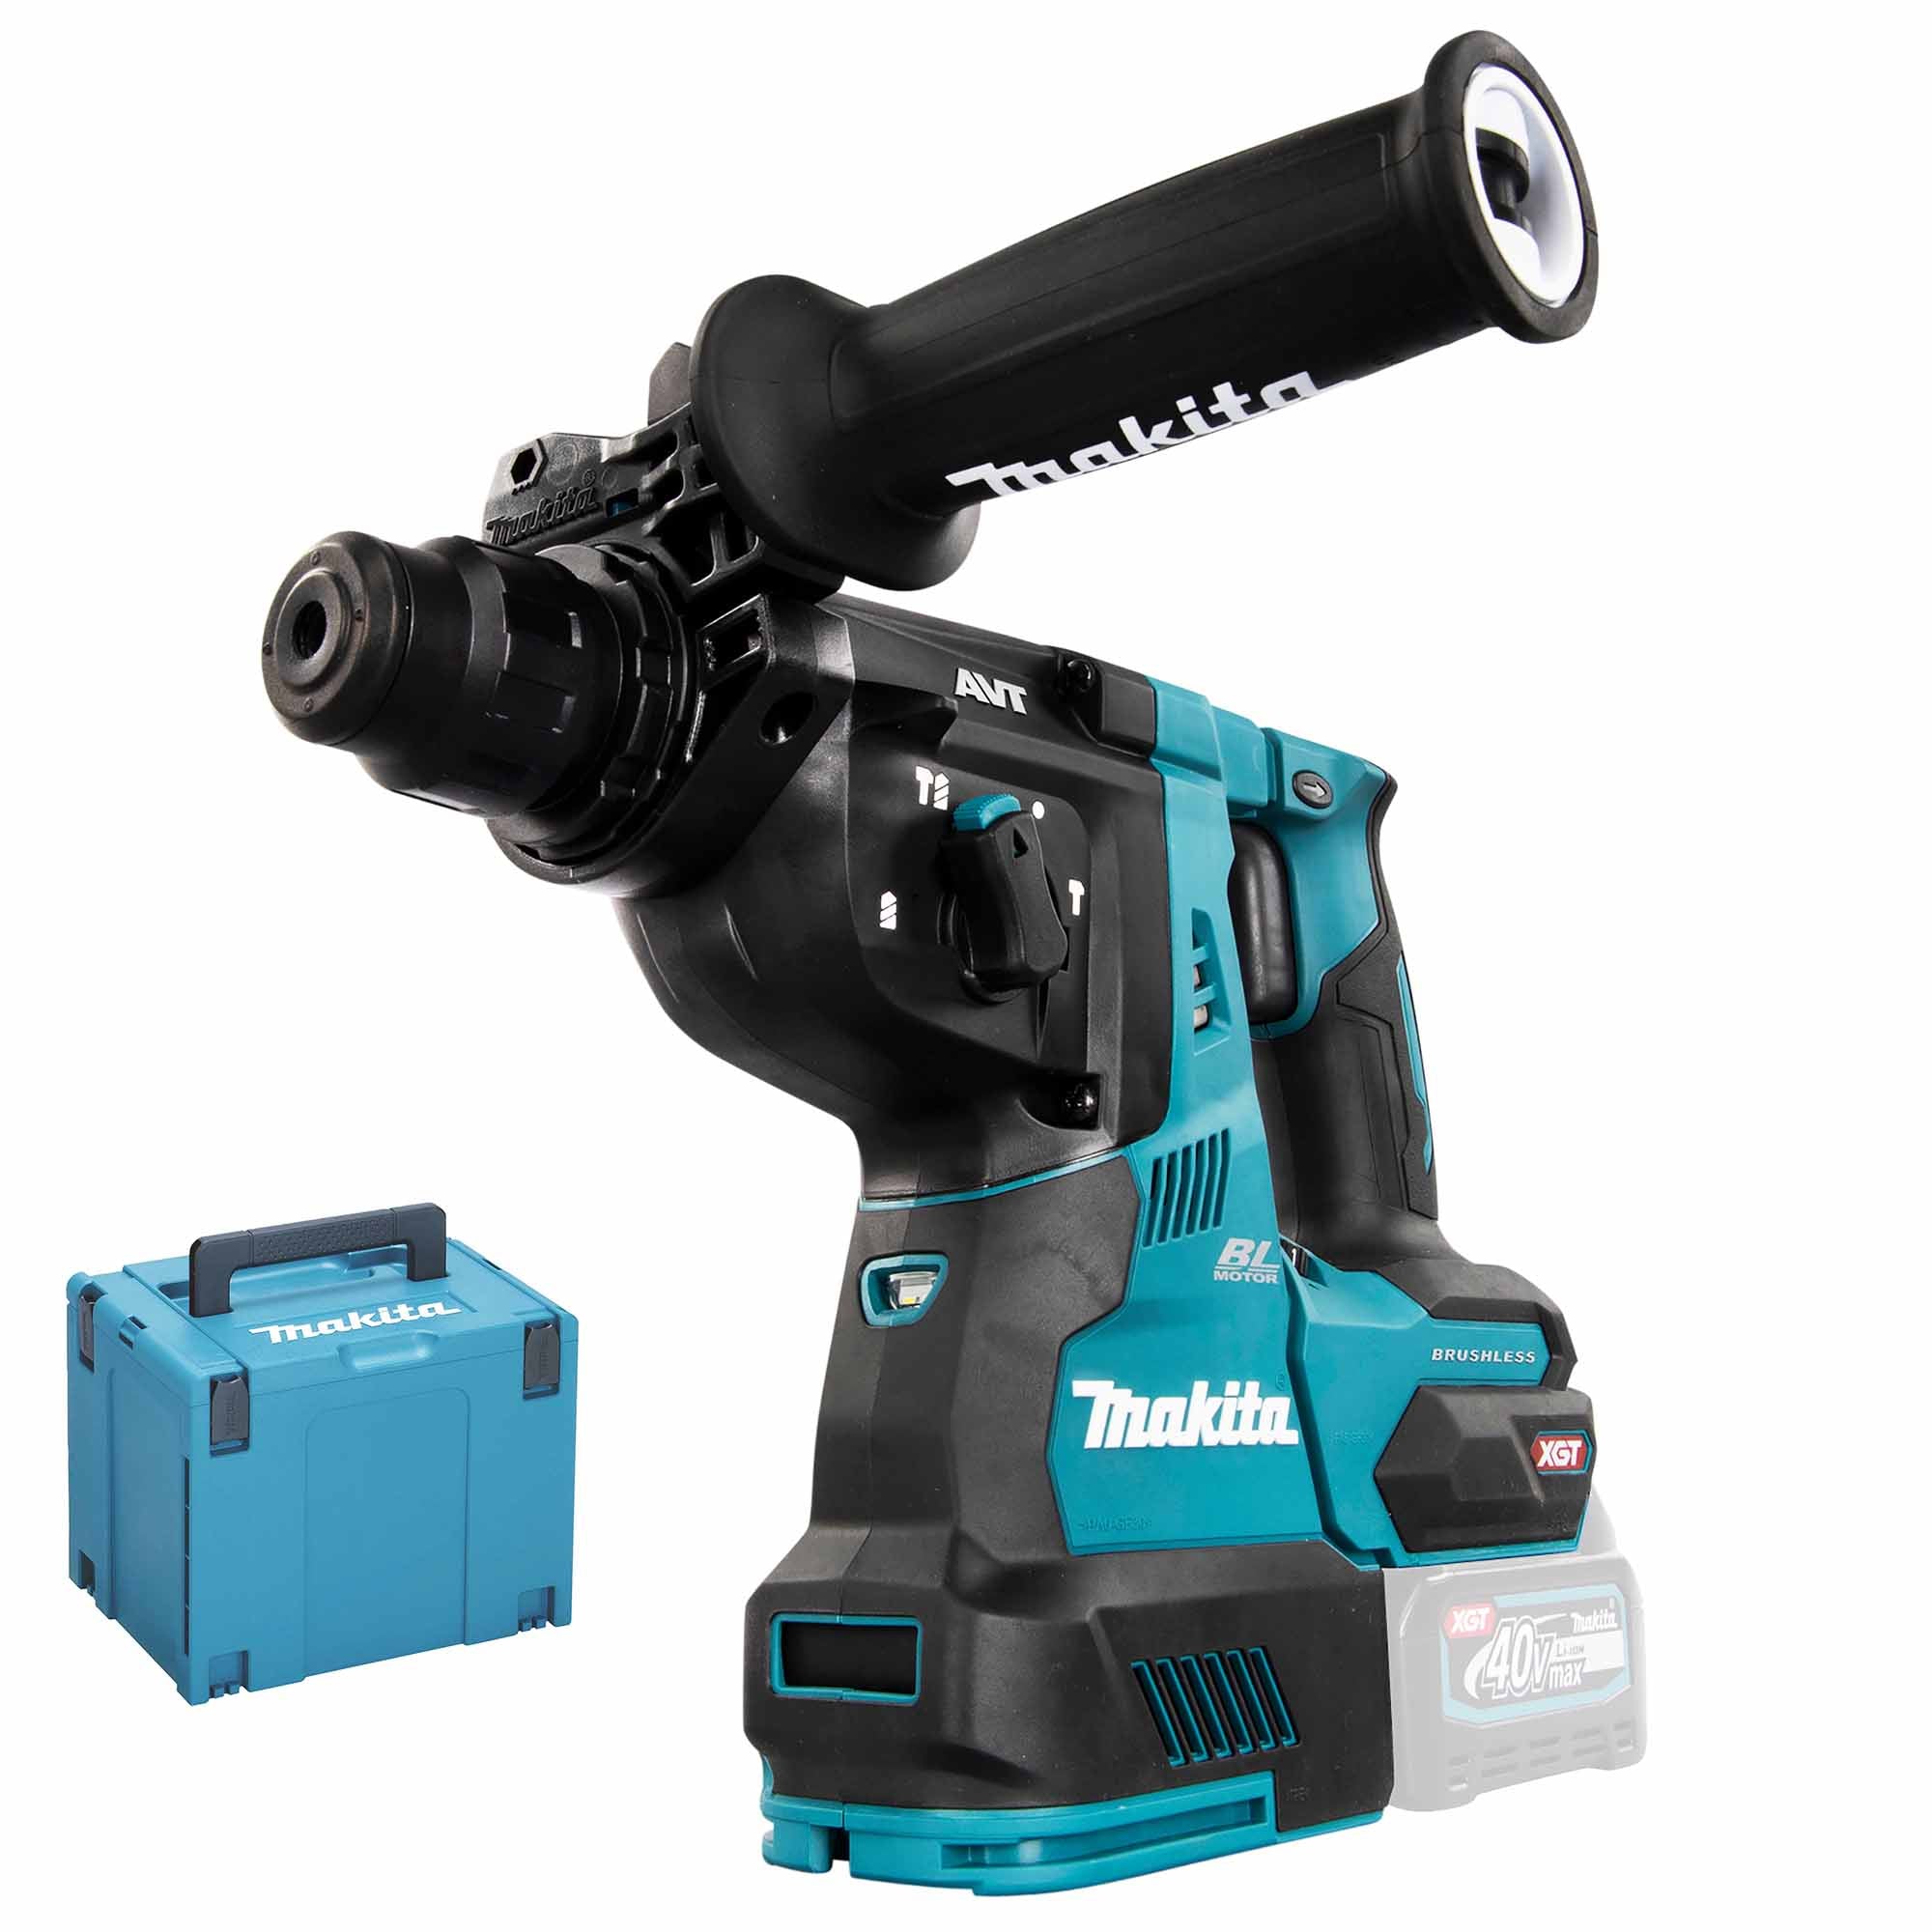 Makita HR003GZ01 40V hammer drill